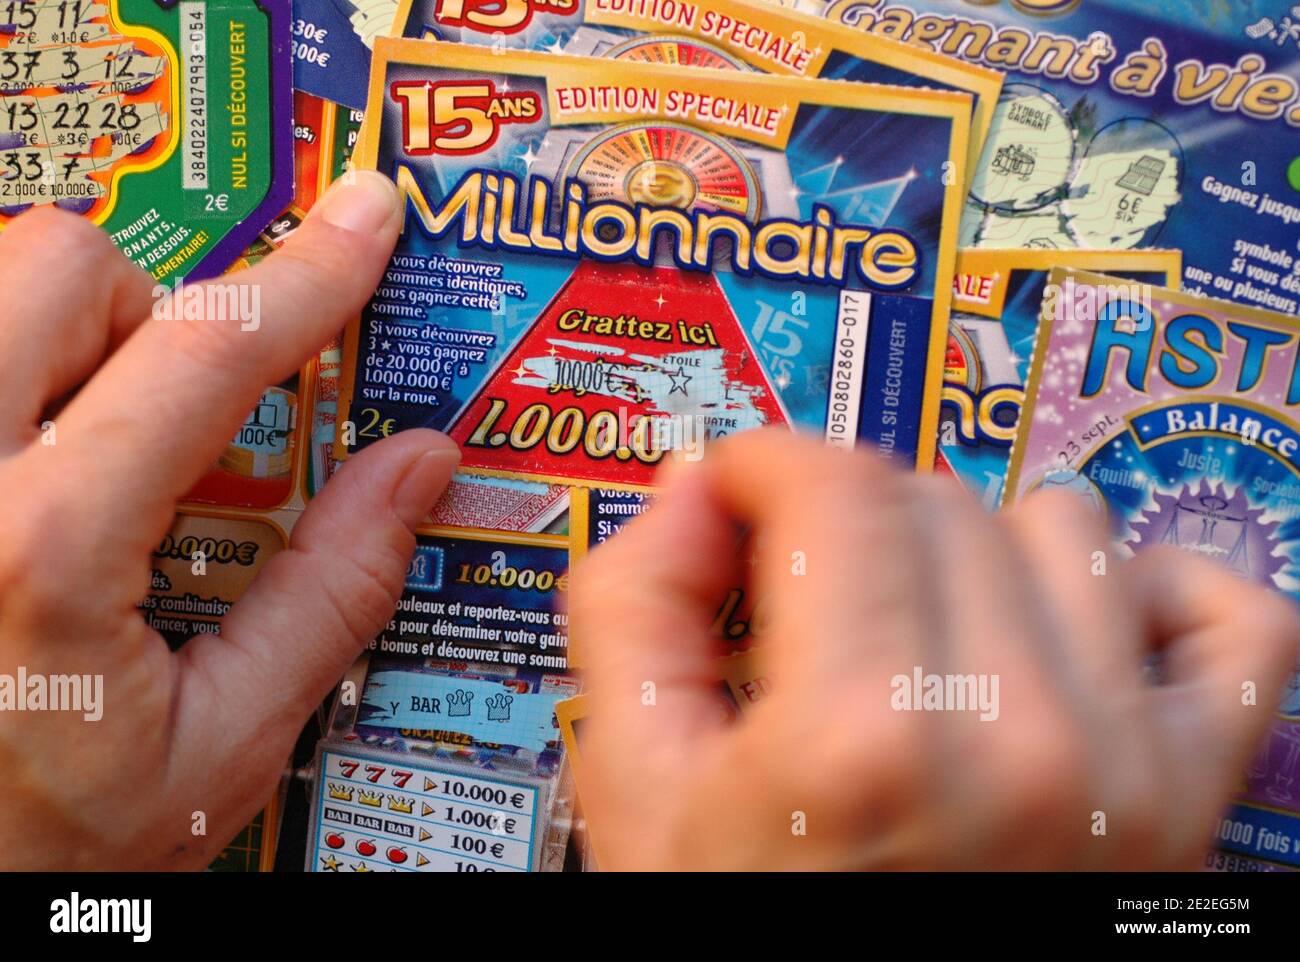 The  Millionnaire , scratch game, gambling in the FDJ (Française des Jeux  ).Scratch, coin, hands, fingers, close-up, 2011. Le millionnaire, jeu de  grattage, jeu d'argent de la FDJ( Française des Jeux ).